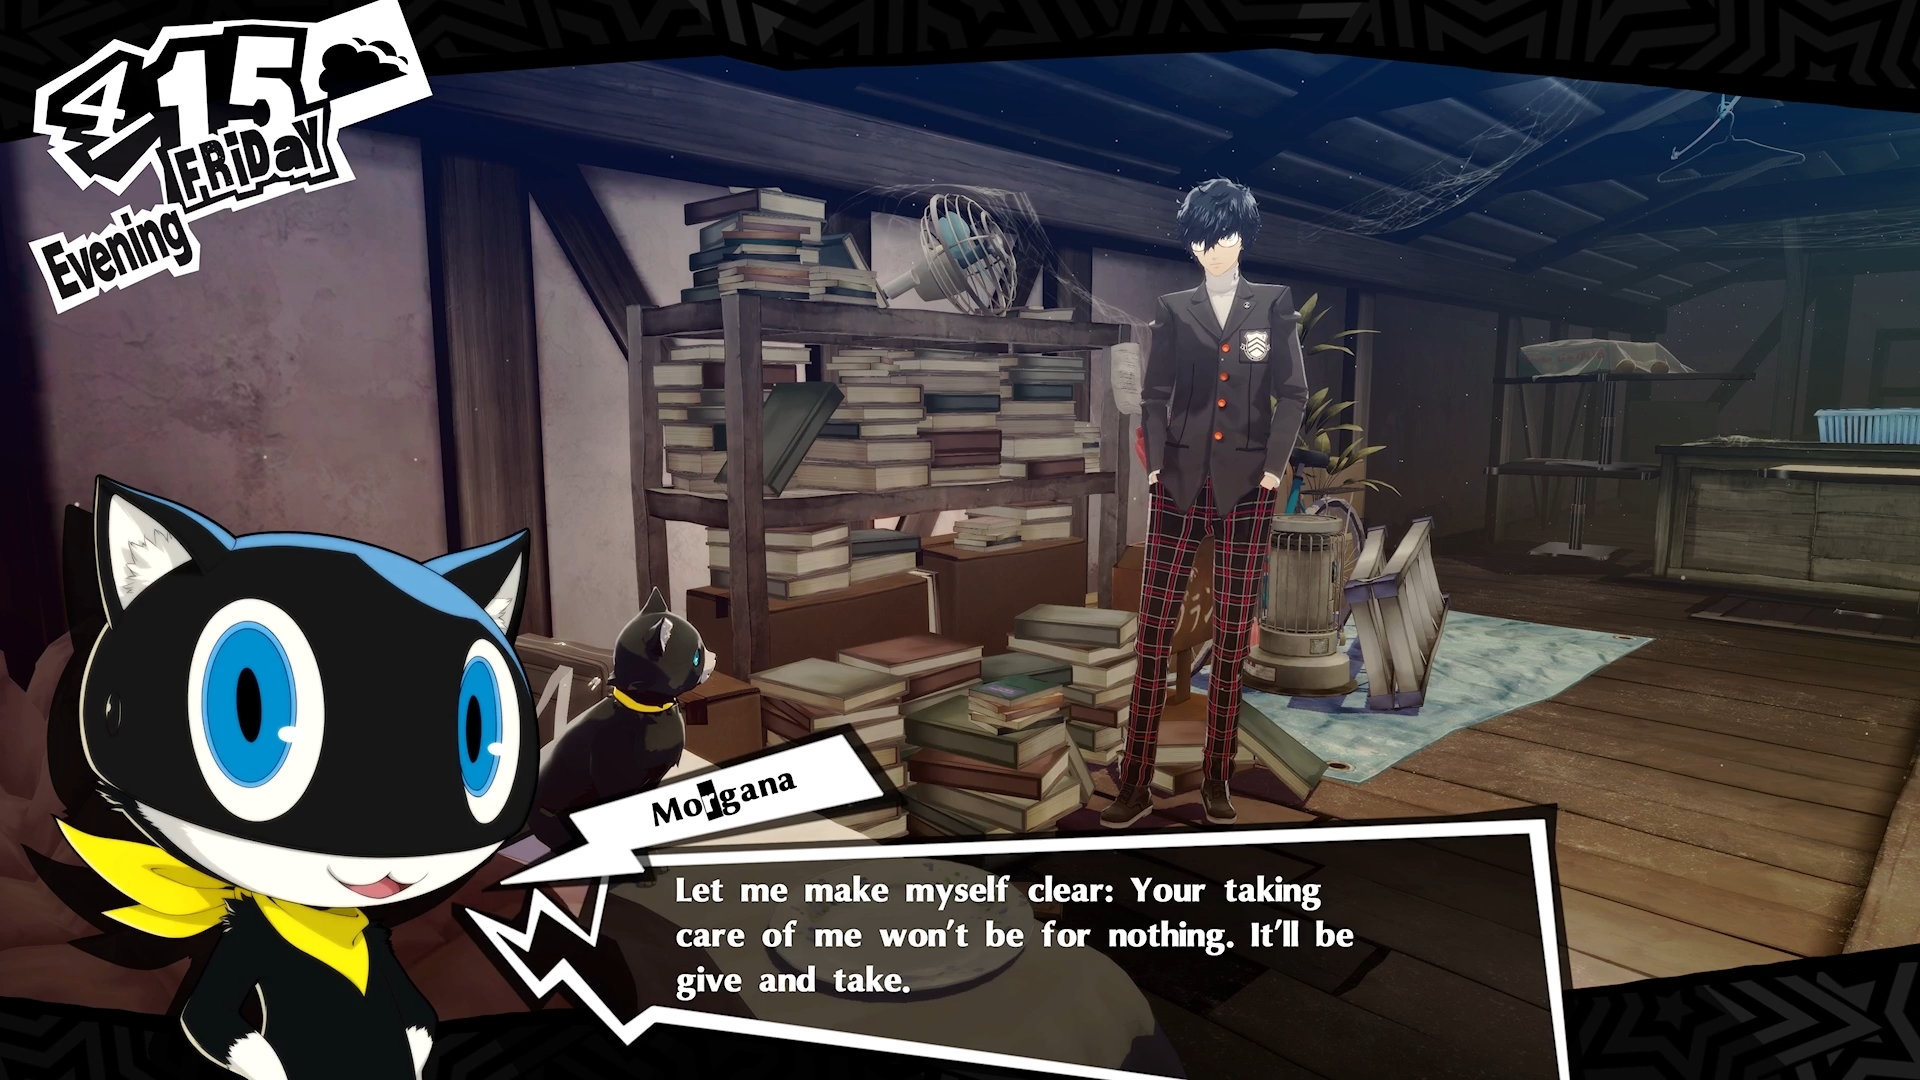 A screenshot of Persona 5 Royal showing Joker talking with Morgana